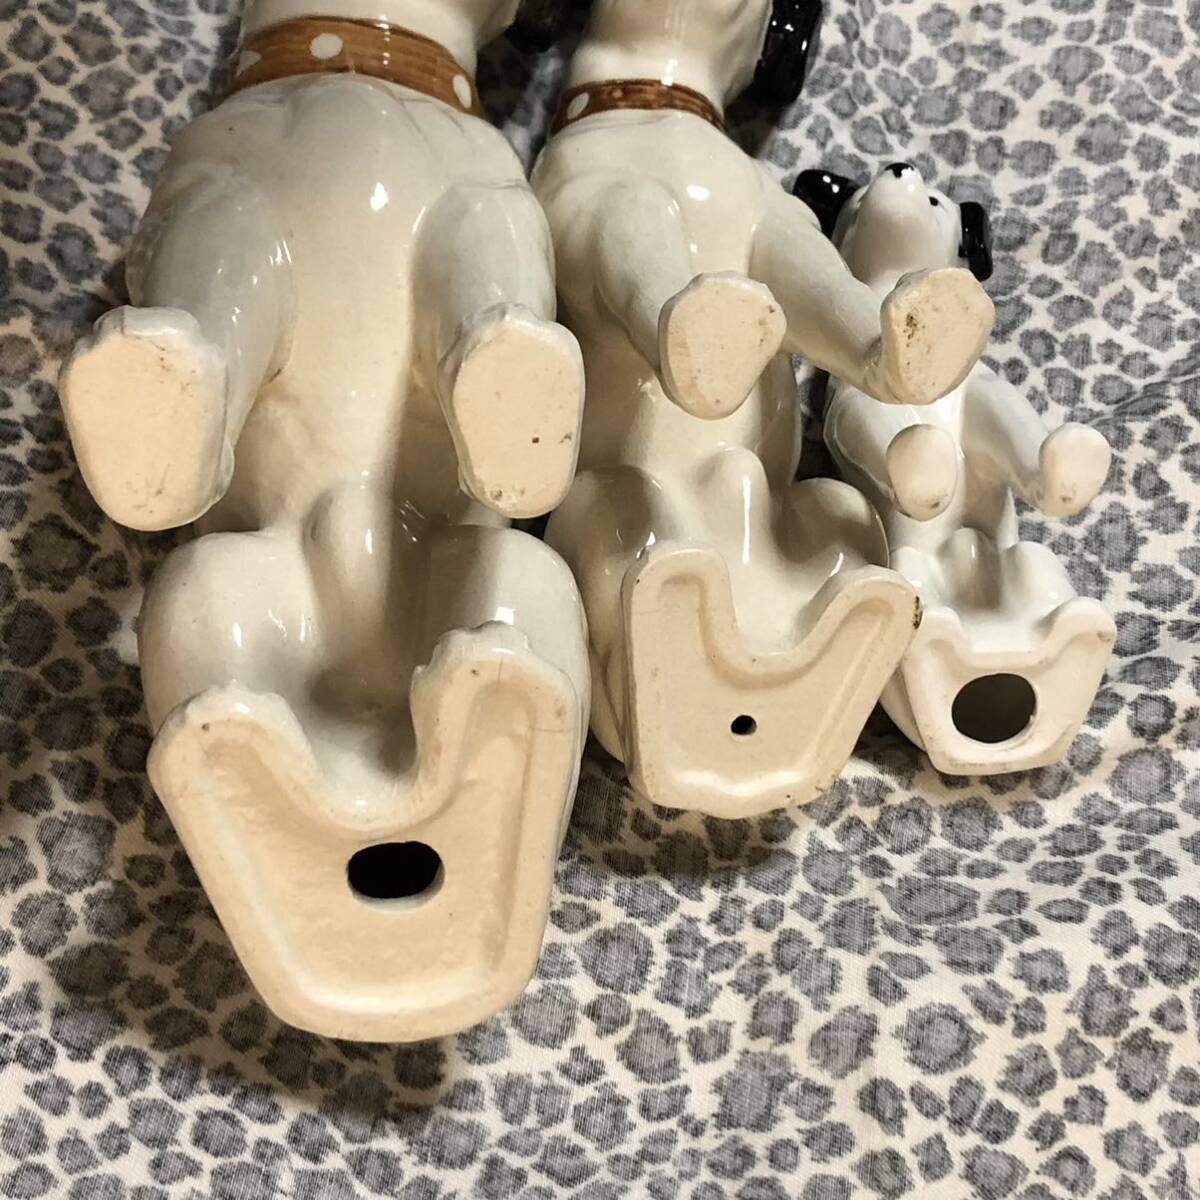 ビクター犬 ニッパー君 6匹セット 陶器 置き物 インテリア ビクター ヴィンテージ 昭和 レトロ Victor Vintage Nipper